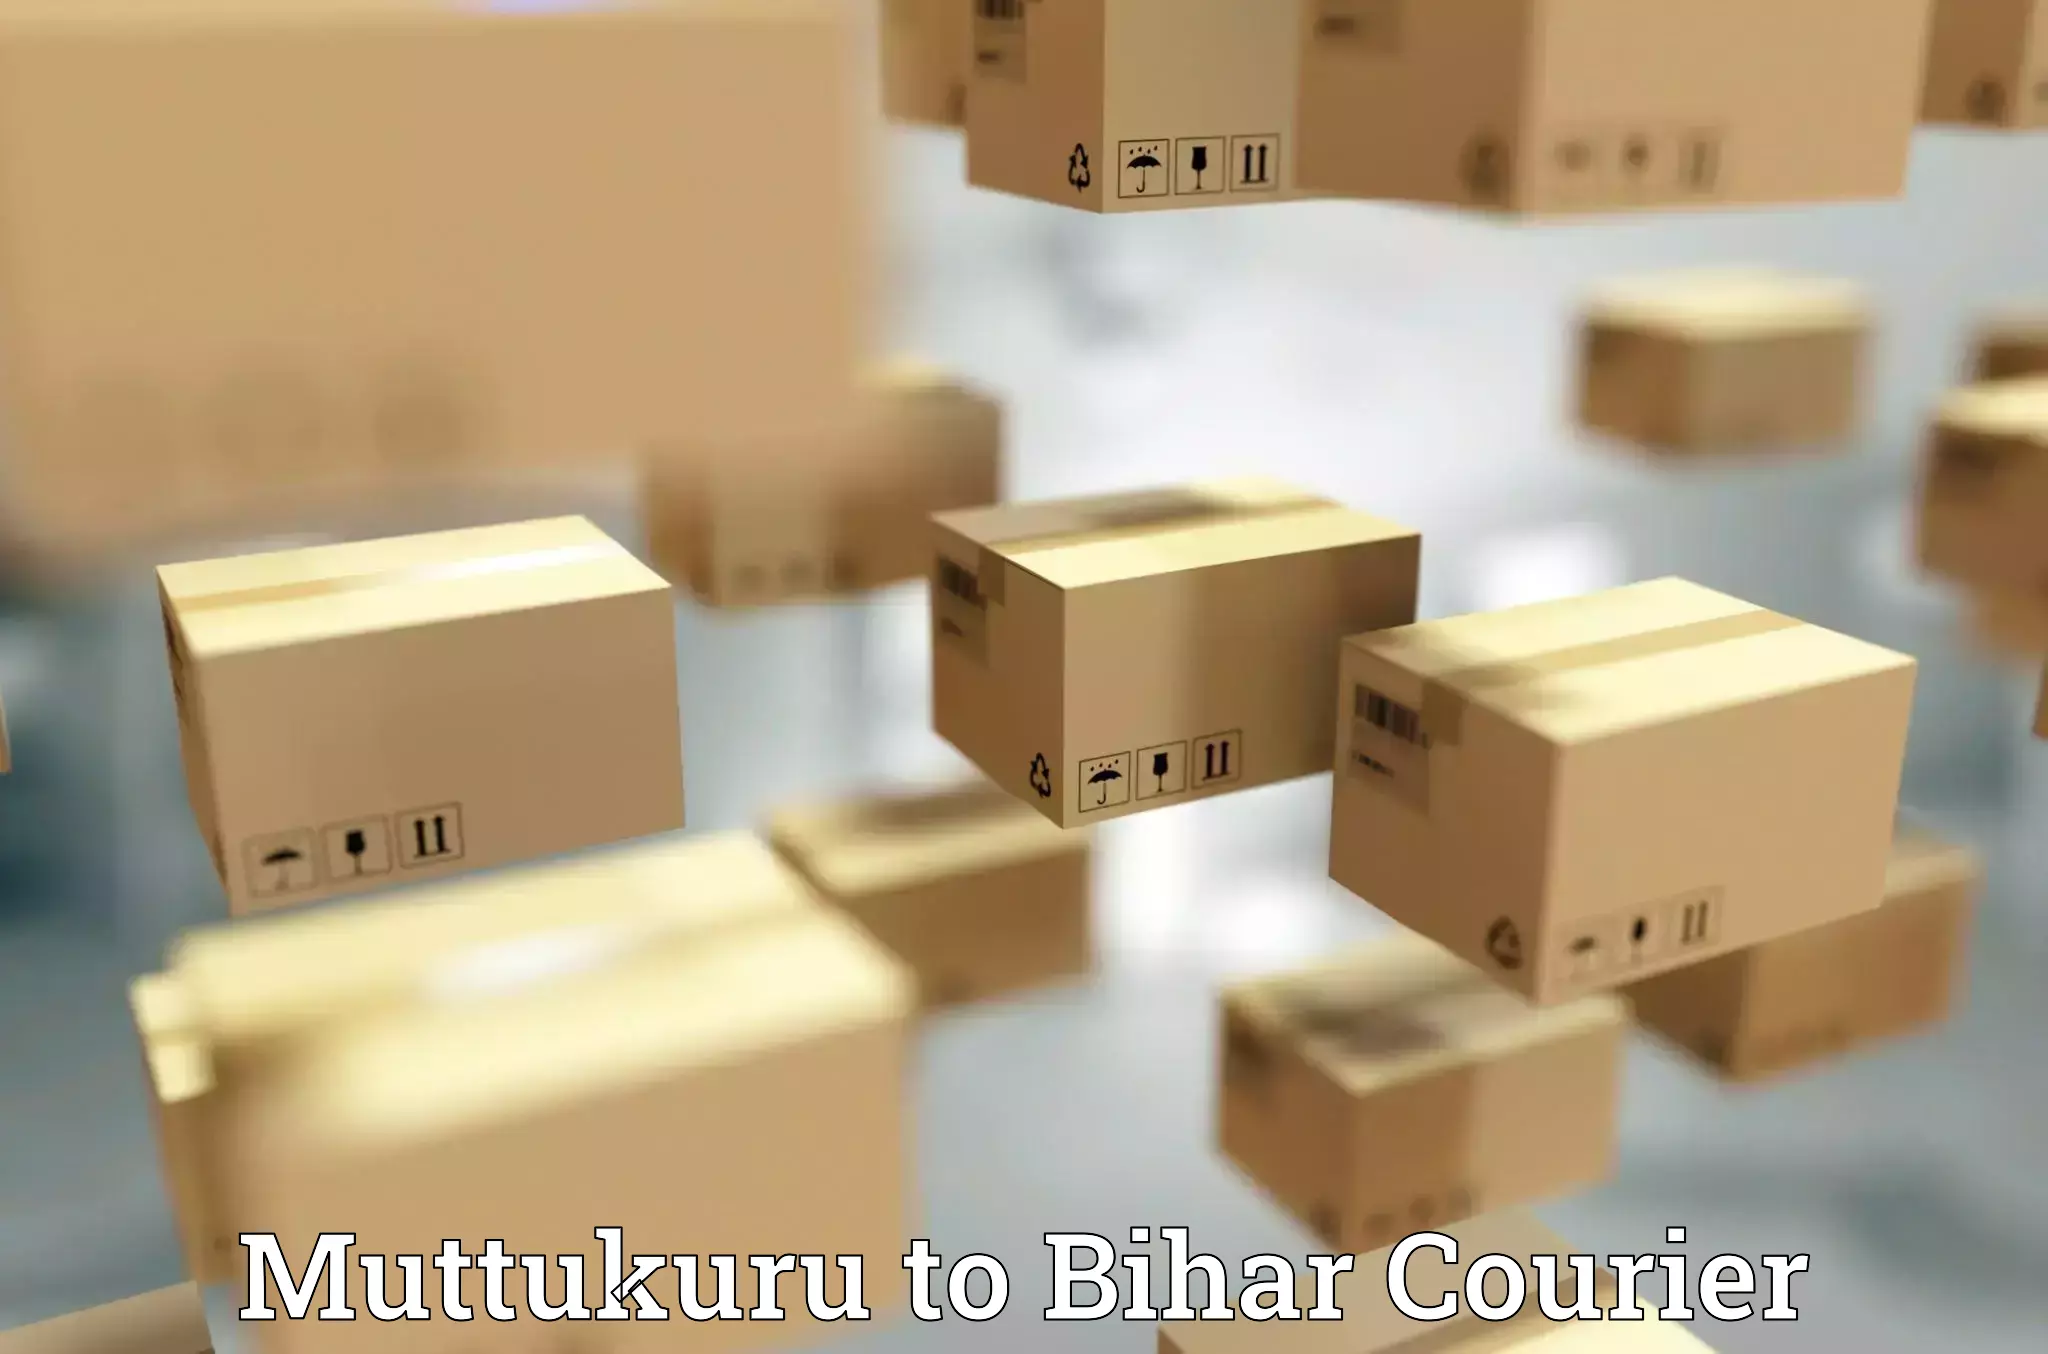 Efficient parcel delivery Muttukuru to Bihar